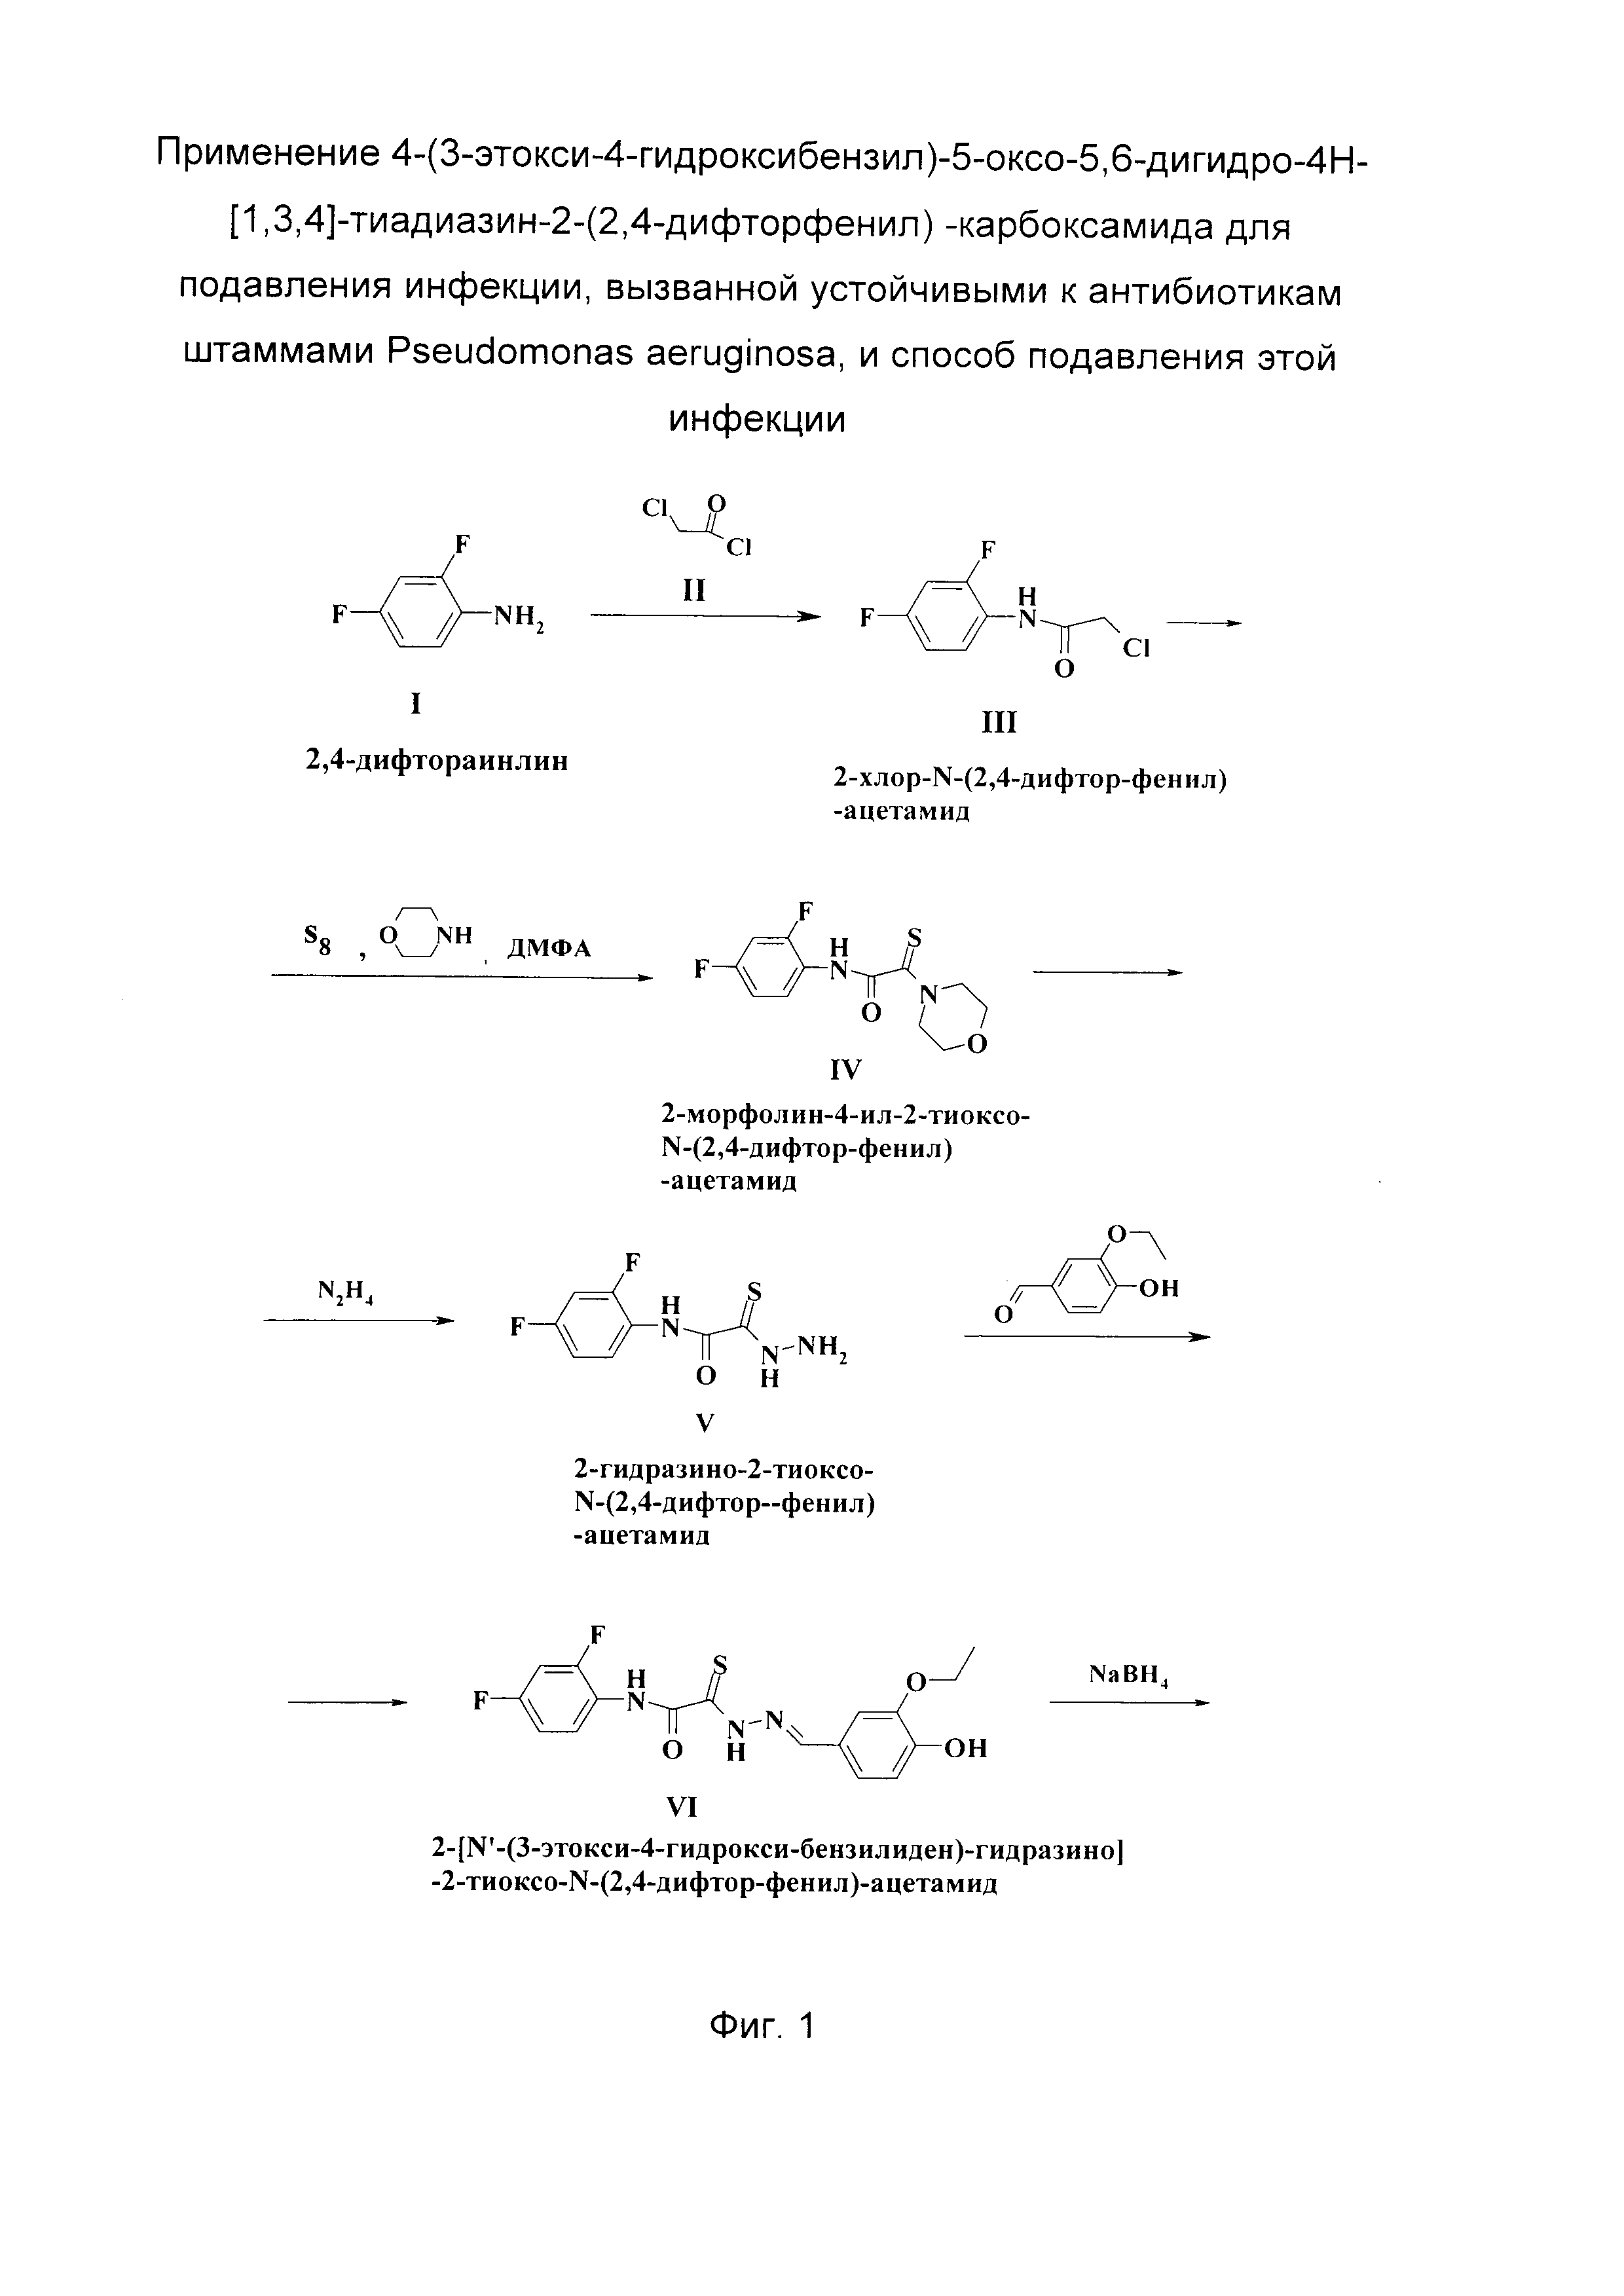 Применение 4-(3-этокси-4-гидроксибензил)-5-оксо-5,6-дигидро-4Н-[1,3,4]-тиадиазин-2-(2,4-дифторфенил)-карбоксамида для подавления инфекции, вызванной устойчивыми к антибиотикам штаммами Pseudomonas aeruginosa, и способ подавления этой инфекции